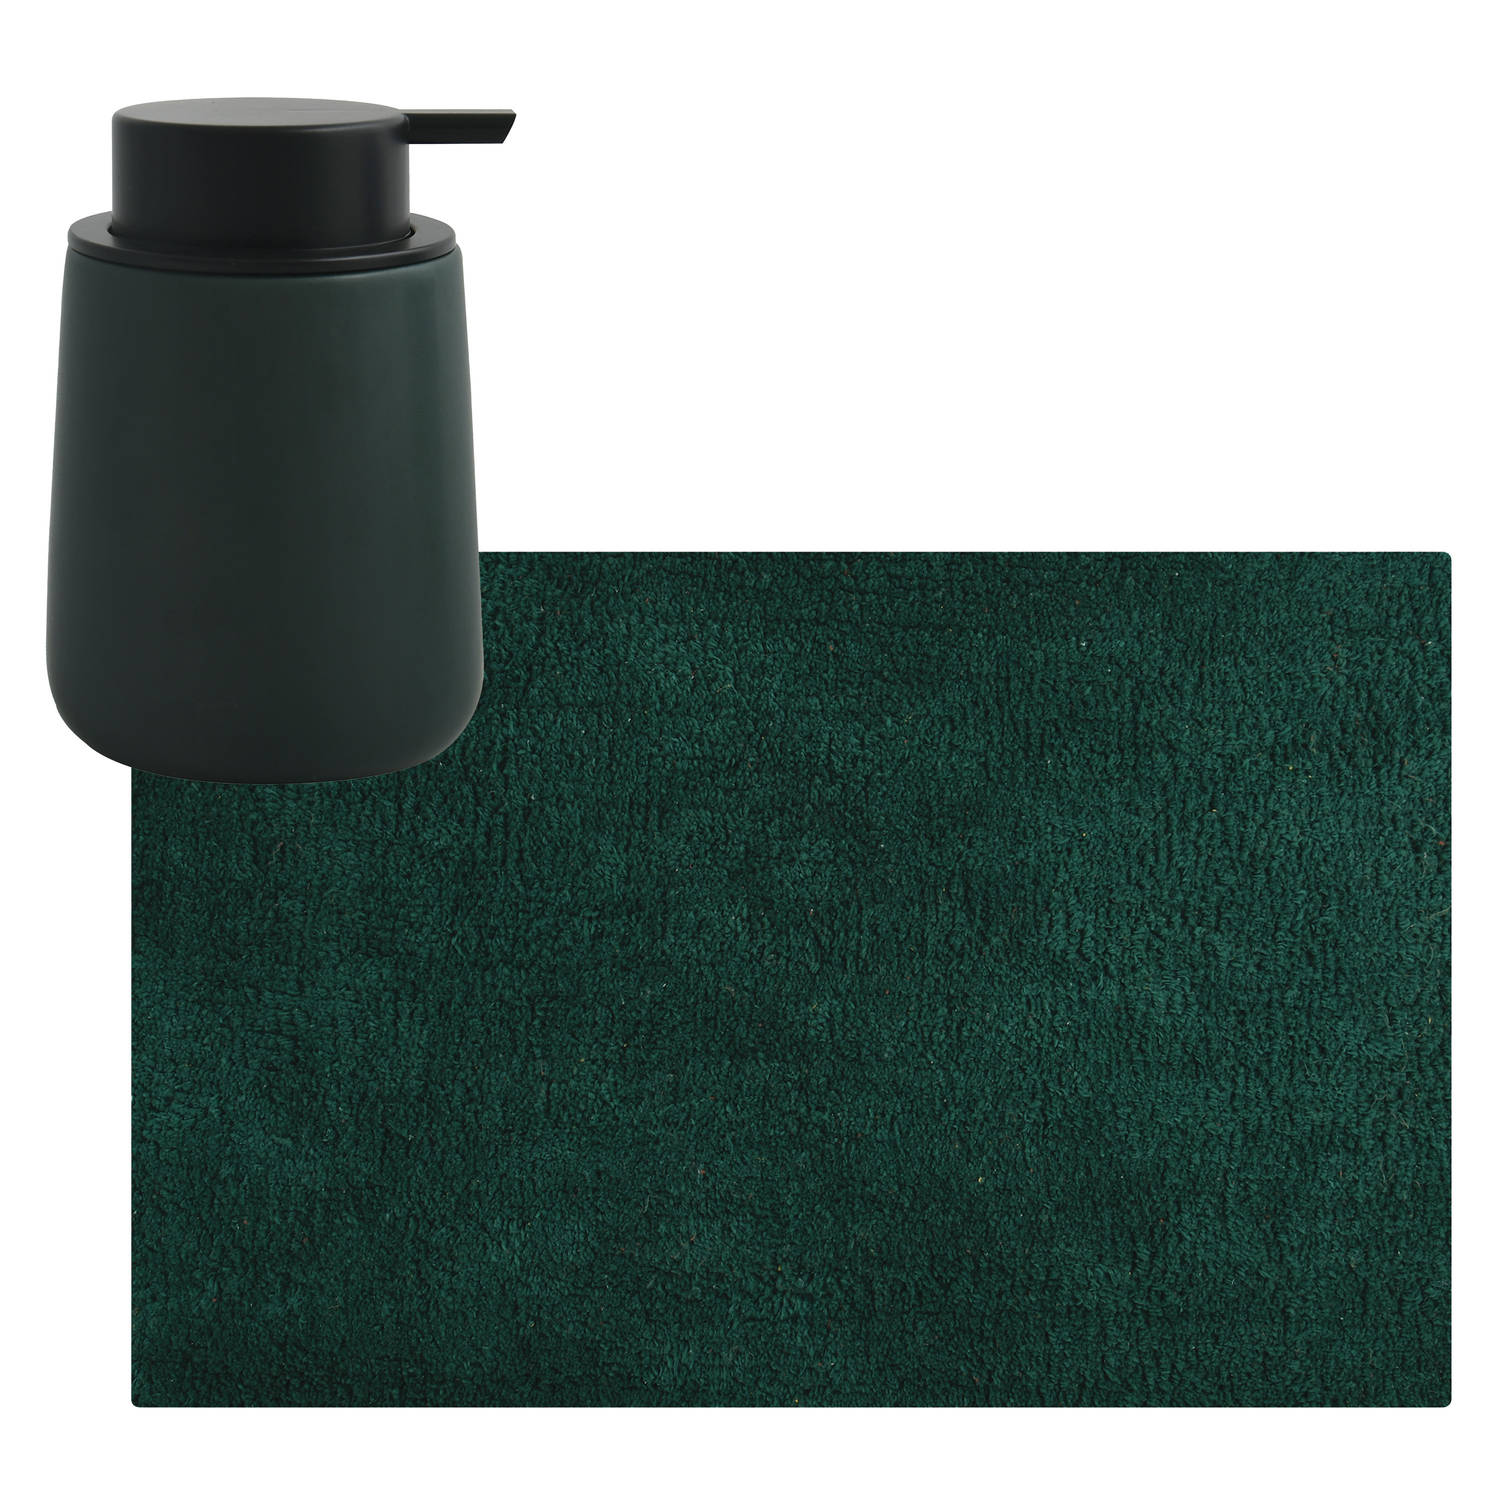 MSV badkamer droogloop mat-tapijt 40 x 60 cm met zelfde kleur zeeppompje 300 ml donkergroen Badmatje